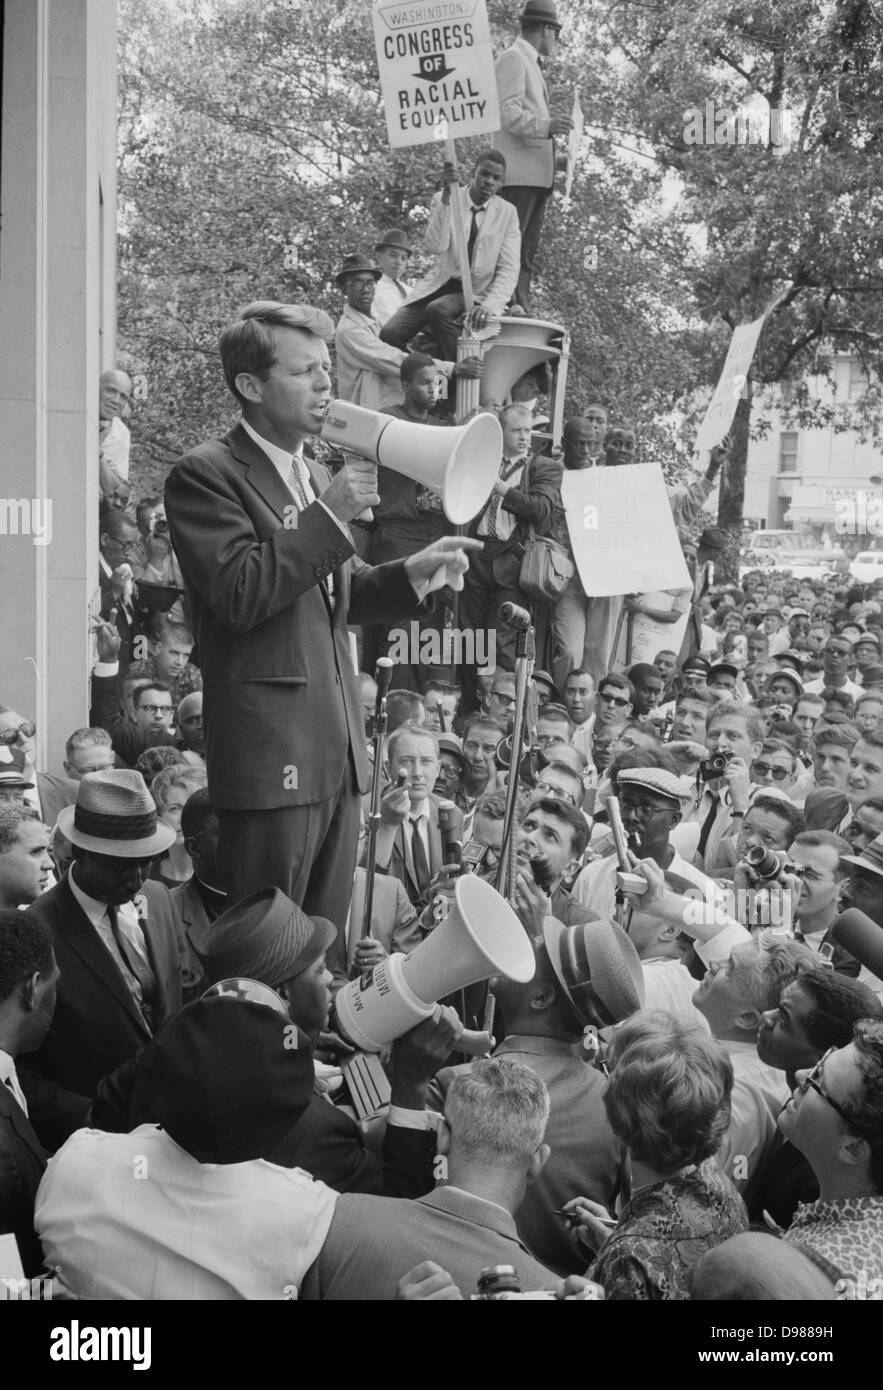 Fotografia che mostra il procuratore generale Robert F Kennedy parlando a una folla di americani Africani e i bianchi attraverso un megafono al di fuori del reparto di giustizia; segno per il Congresso di uguaglianza razziale è visualizzato in modo chiaro. 1963 giugno 14. Fotografo: Warren Leffler K. Foto Stock